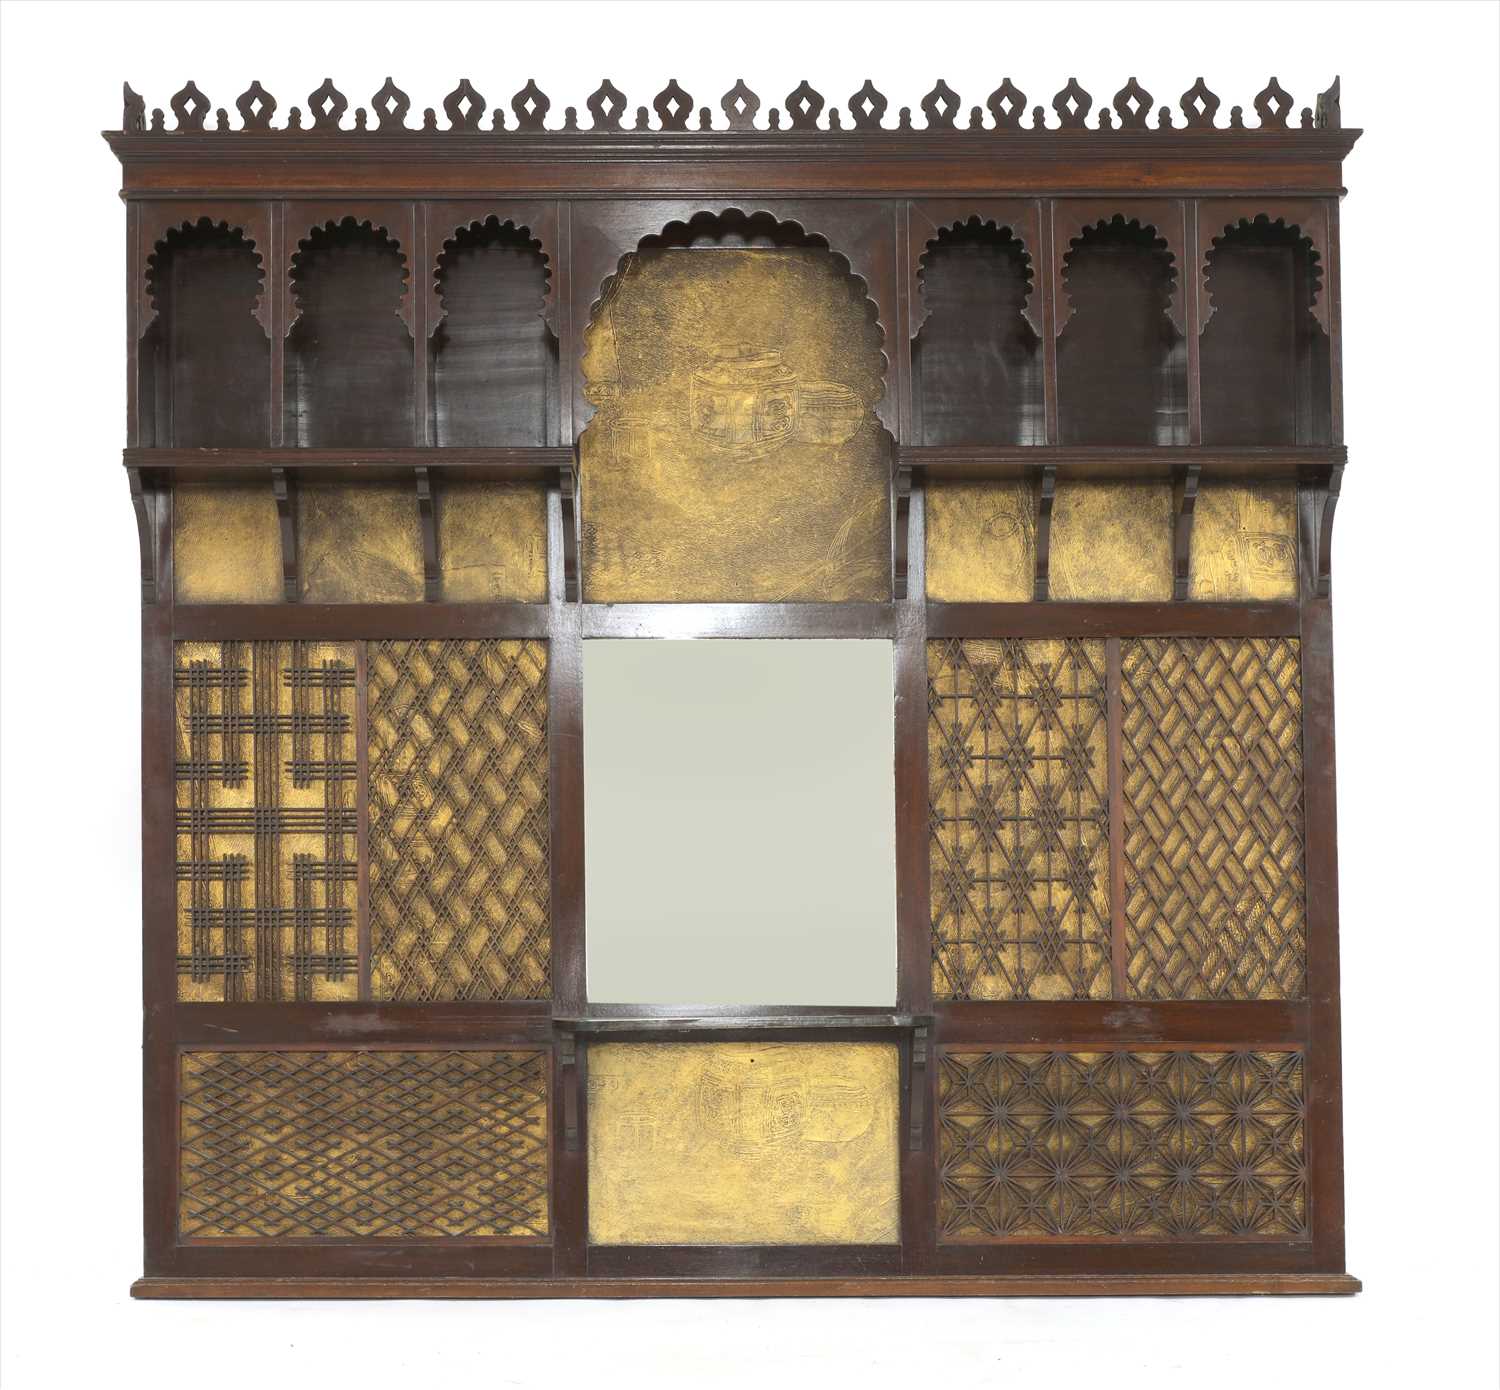 Lot 45 - An Aesthetic mahogany overmantel mirror